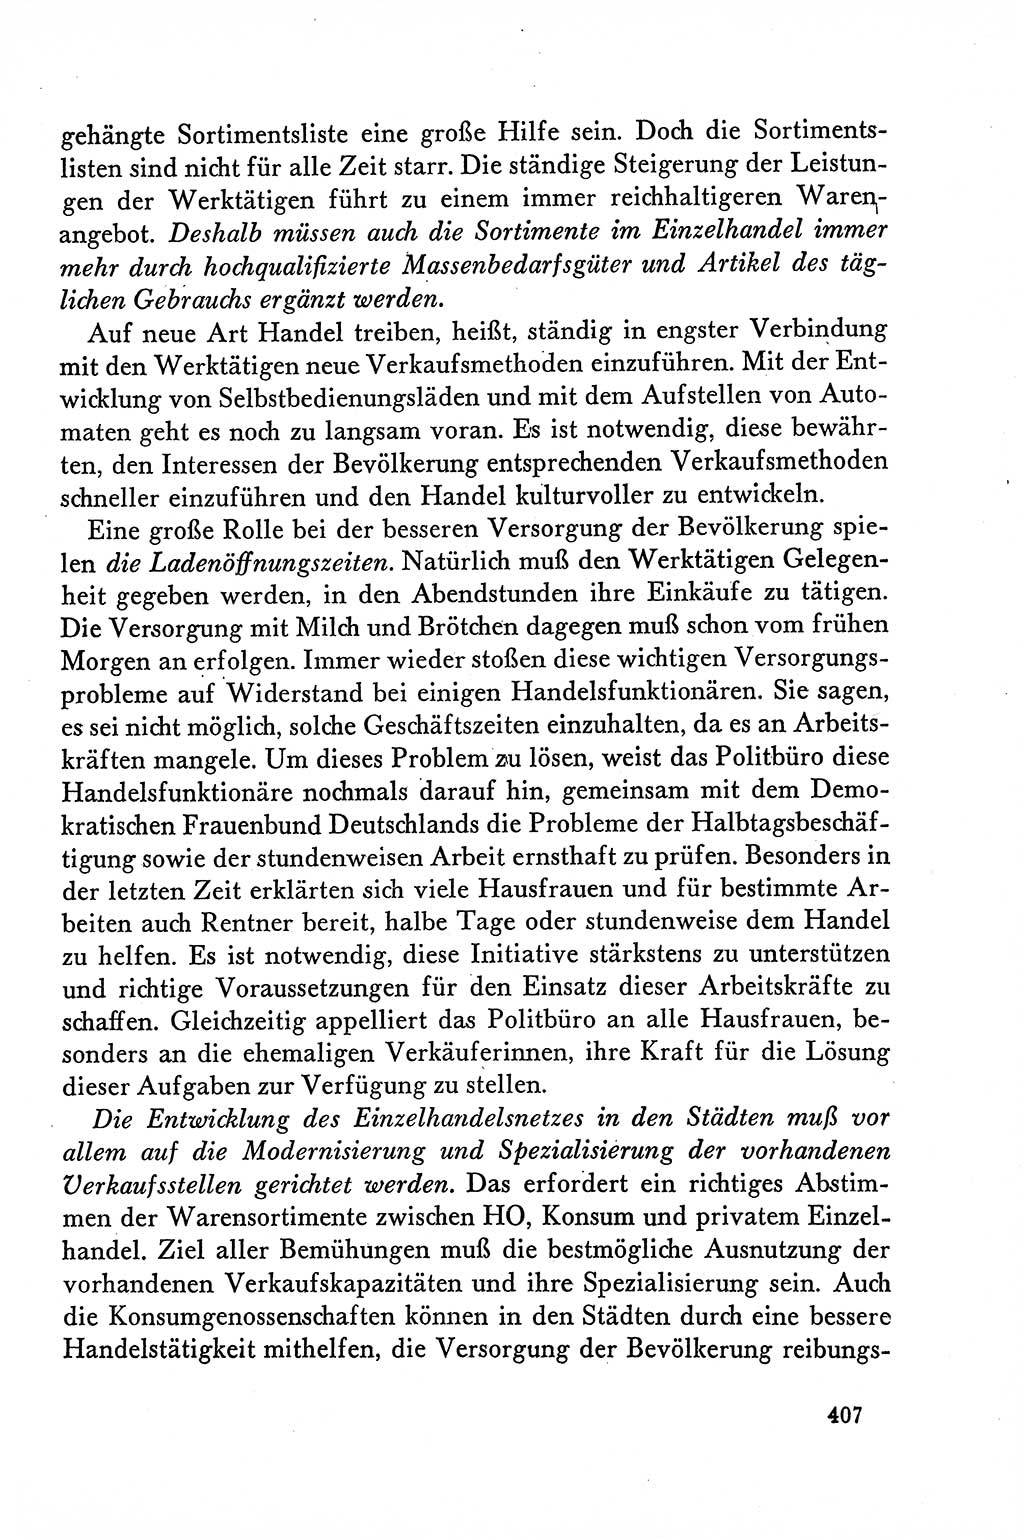 Dokumente der Sozialistischen Einheitspartei Deutschlands (SED) [Deutsche Demokratische Republik (DDR)] 1958-1959, Seite 407 (Dok. SED DDR 1958-1959, S. 407)